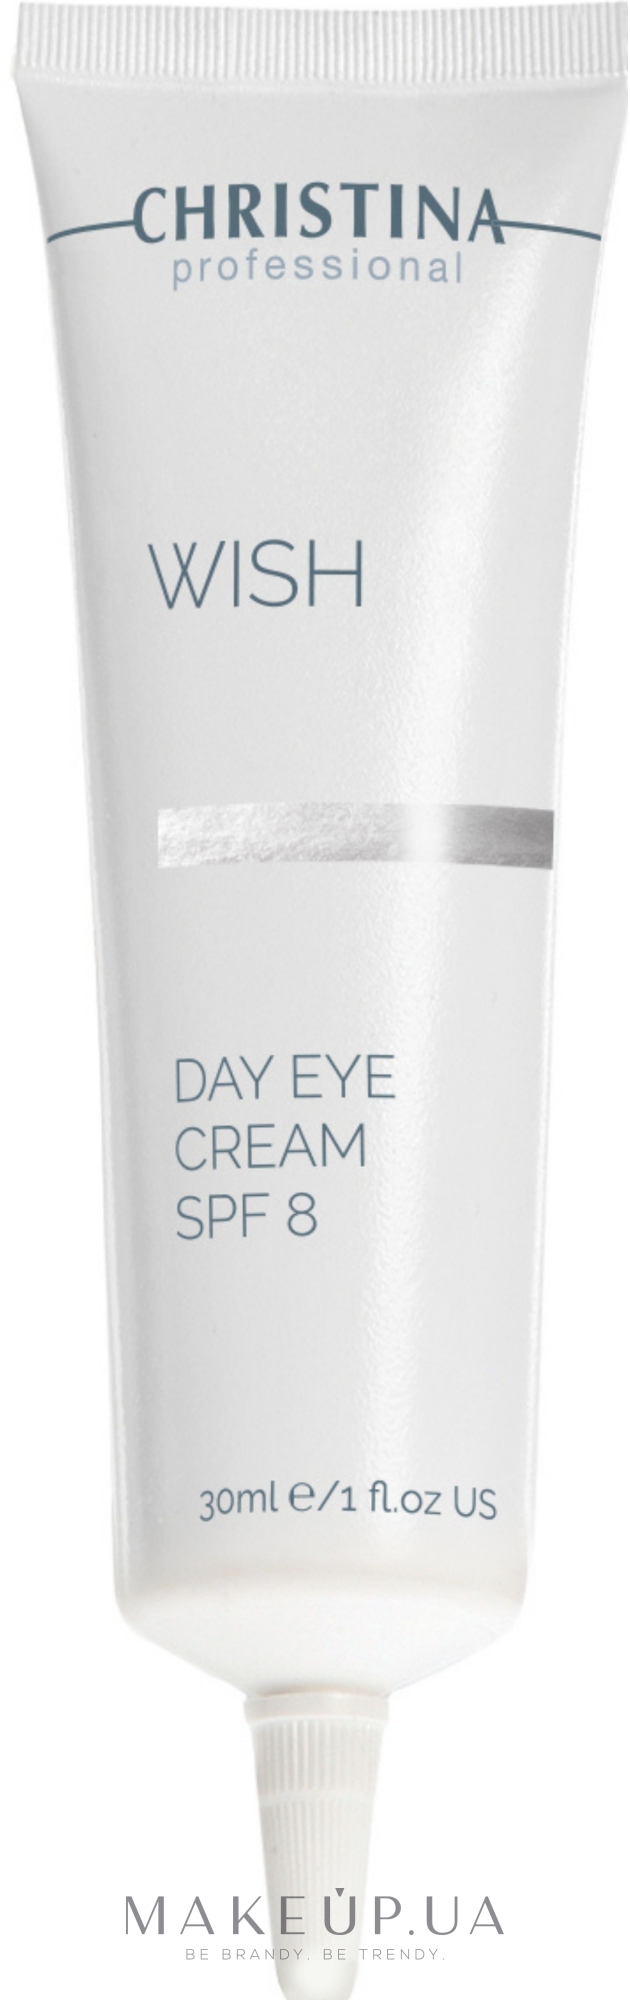 Денний крем з SPF-8 для шкіри навколо очей - Christina Wish Day Eye Cream SPF-8 — фото 30ml